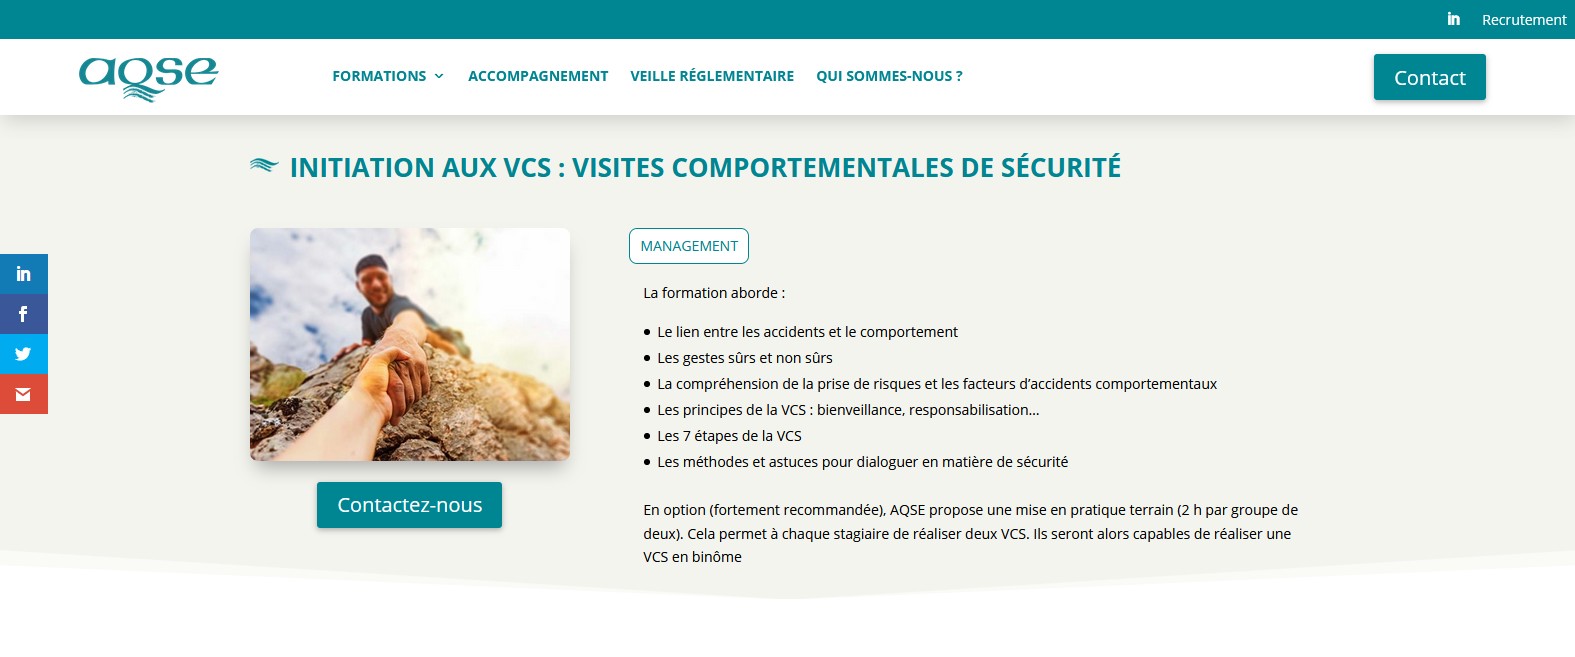 aqse-france.fr  observation des comportements sécurité au travail - initiation aux VCS - visites comportementales de sécurité